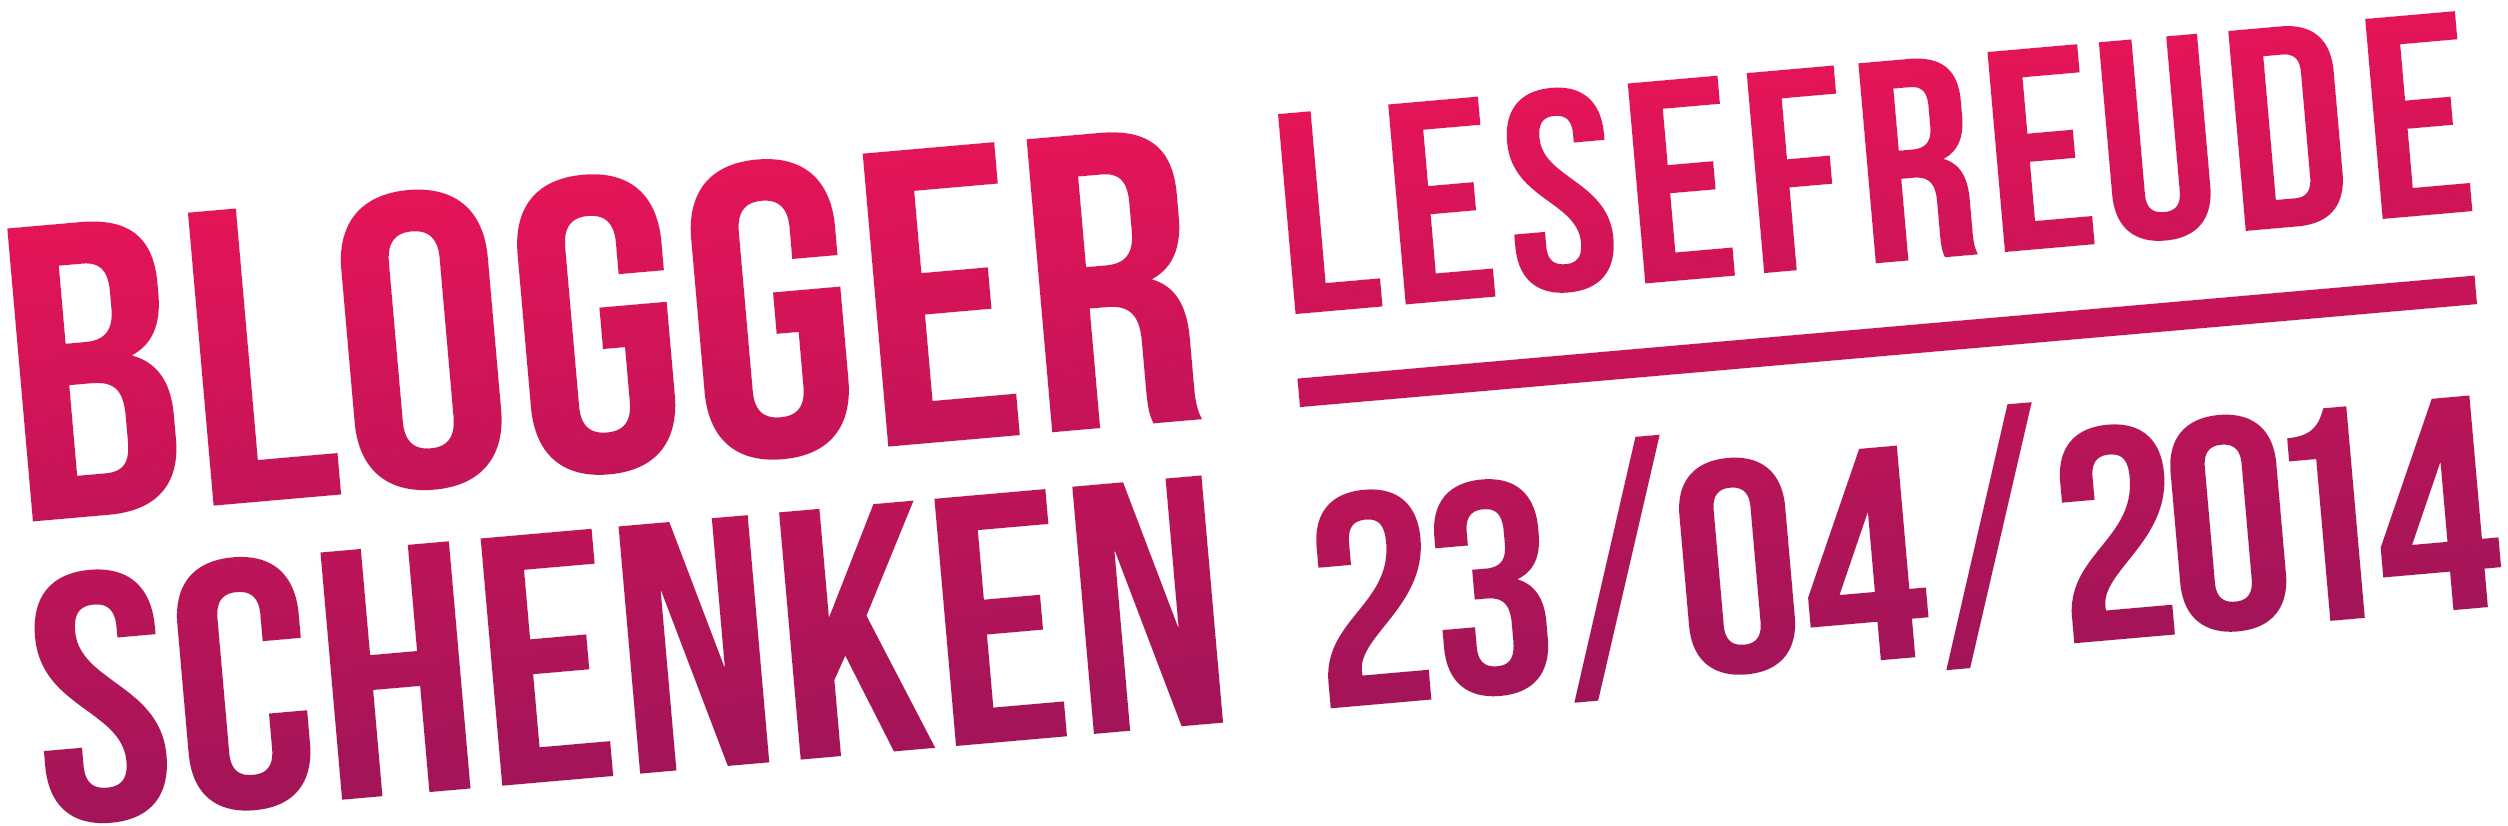 Logo Blogger schenken Lesefreude 2014